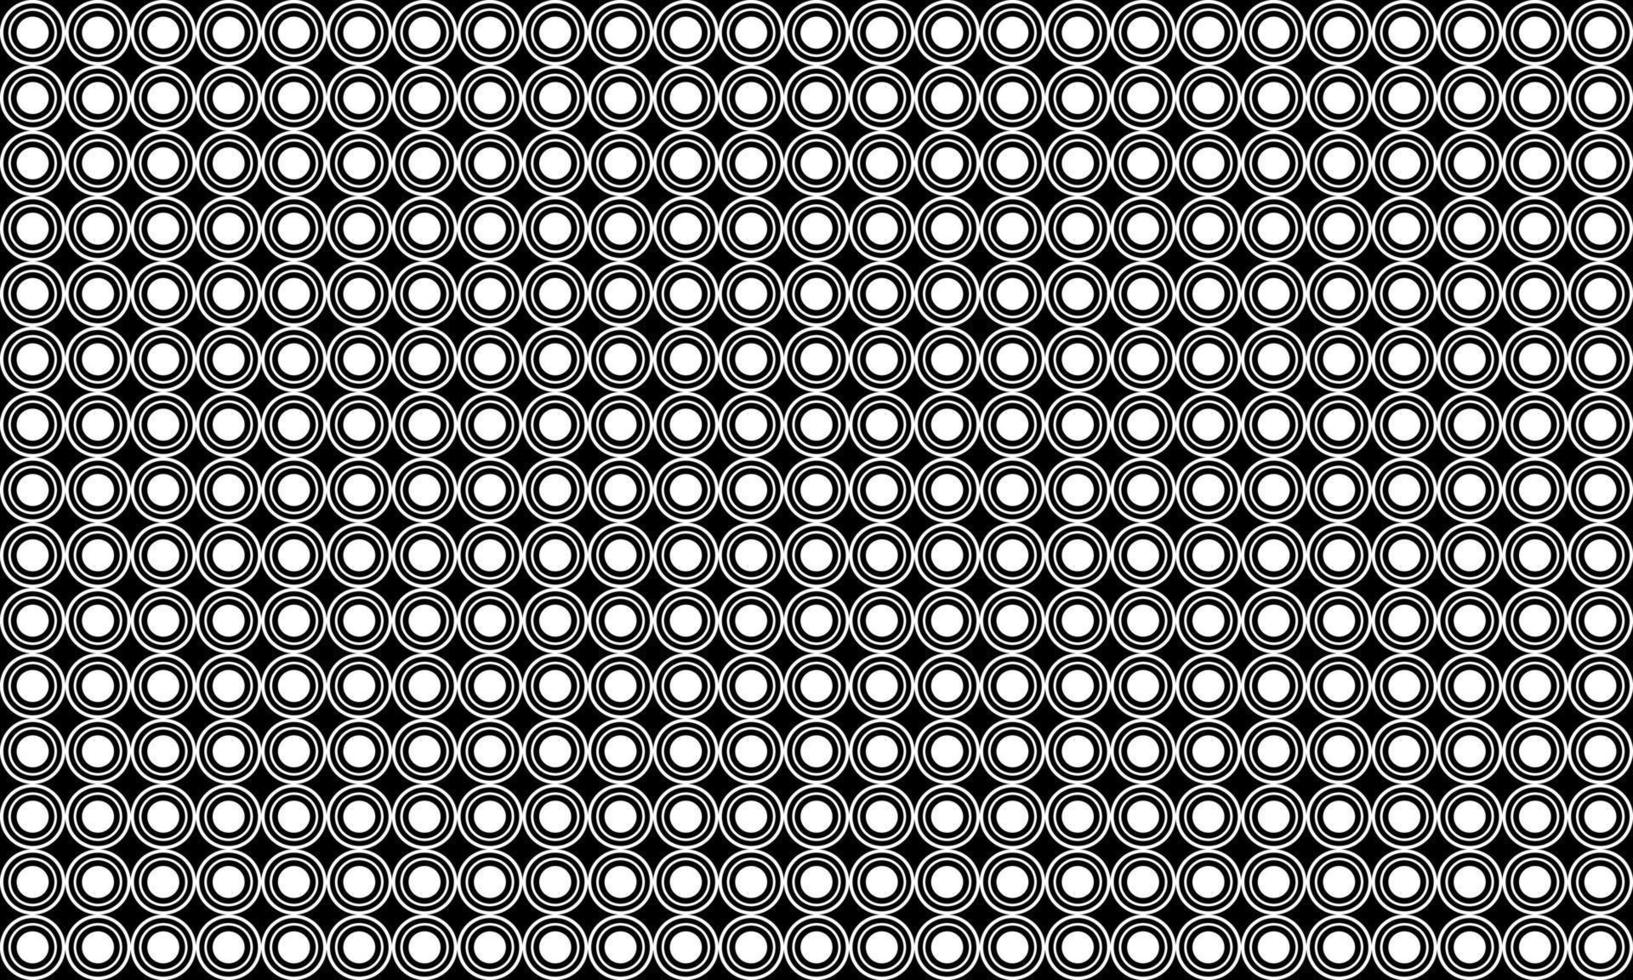 polka dots motief patroon. cirkel vorm sier- voor interieur, buitenkant, tapijt, textiel, kledingstuk, lap, zijde, tegel, behang, inpakken, papier, plastic, enz. vector illustratie